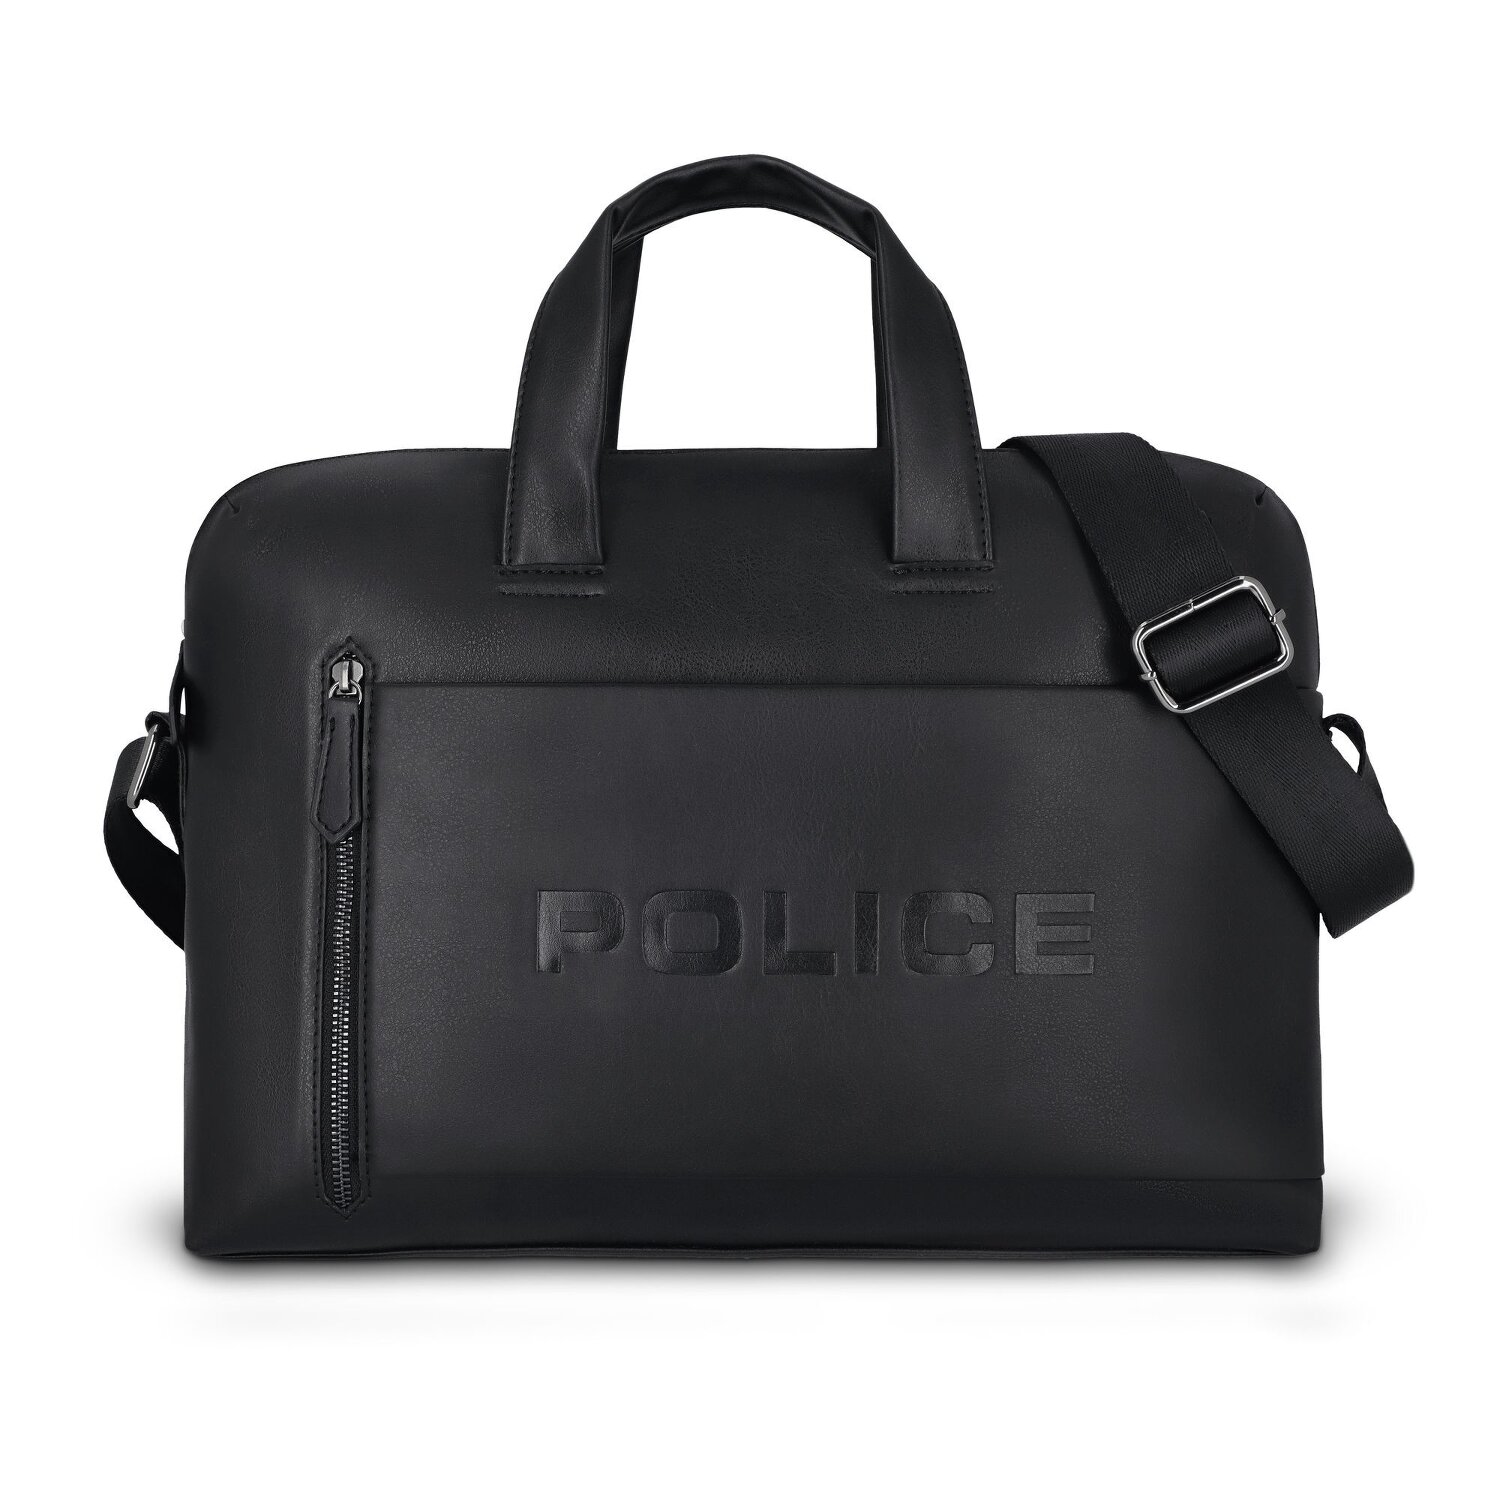 Police Valigetta 40 cm Scomparto per laptop black